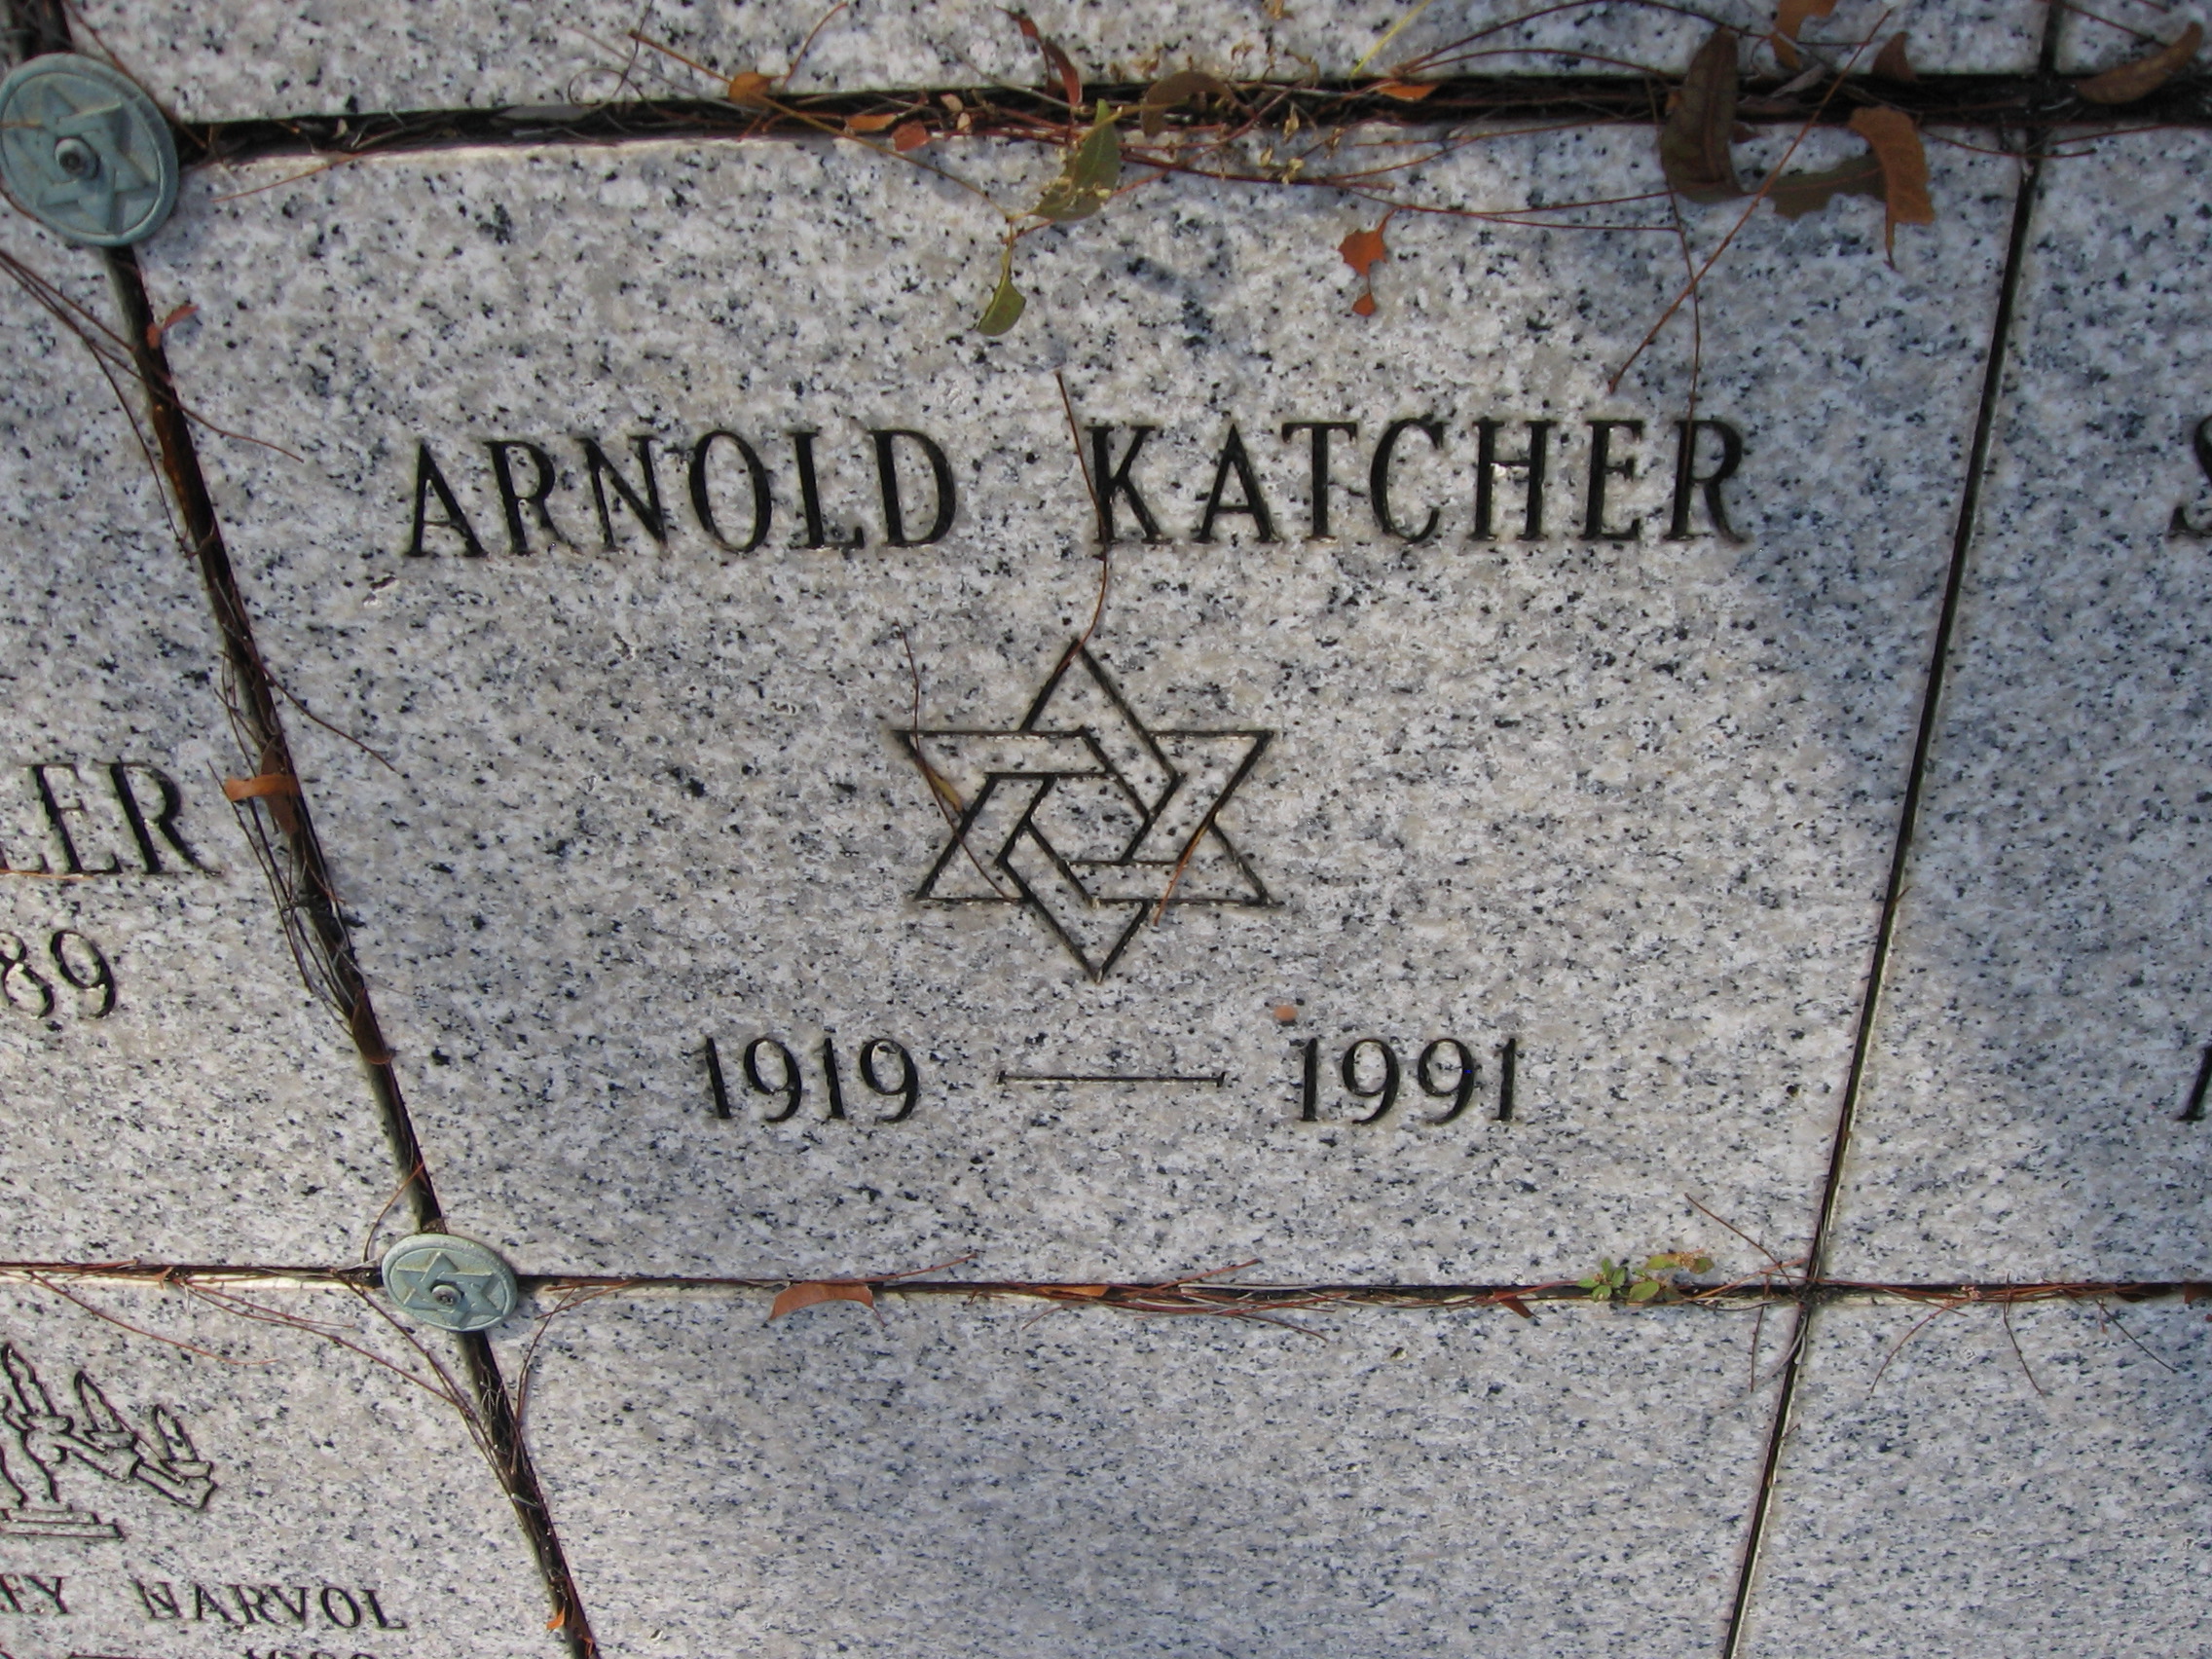 Arnold Katcher